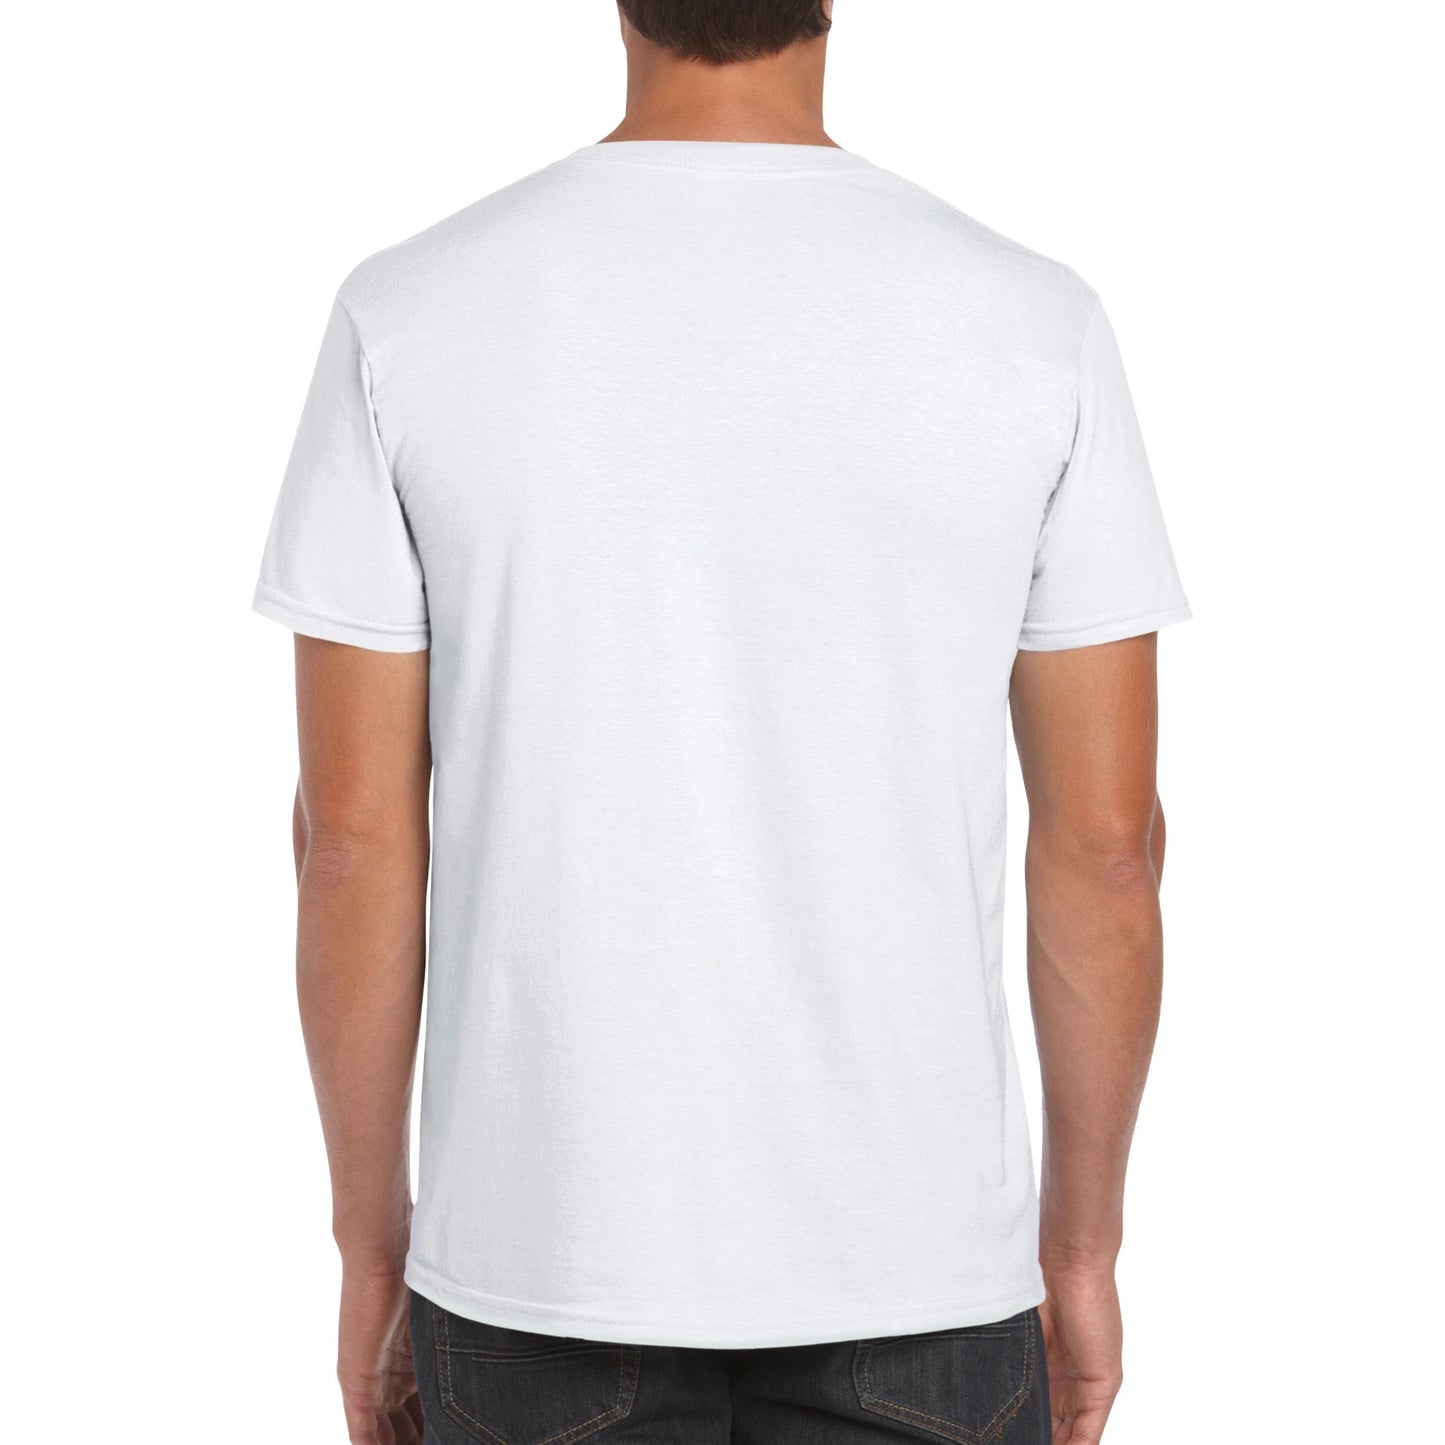 T-shirt girocollo classica unisex personalizzabile